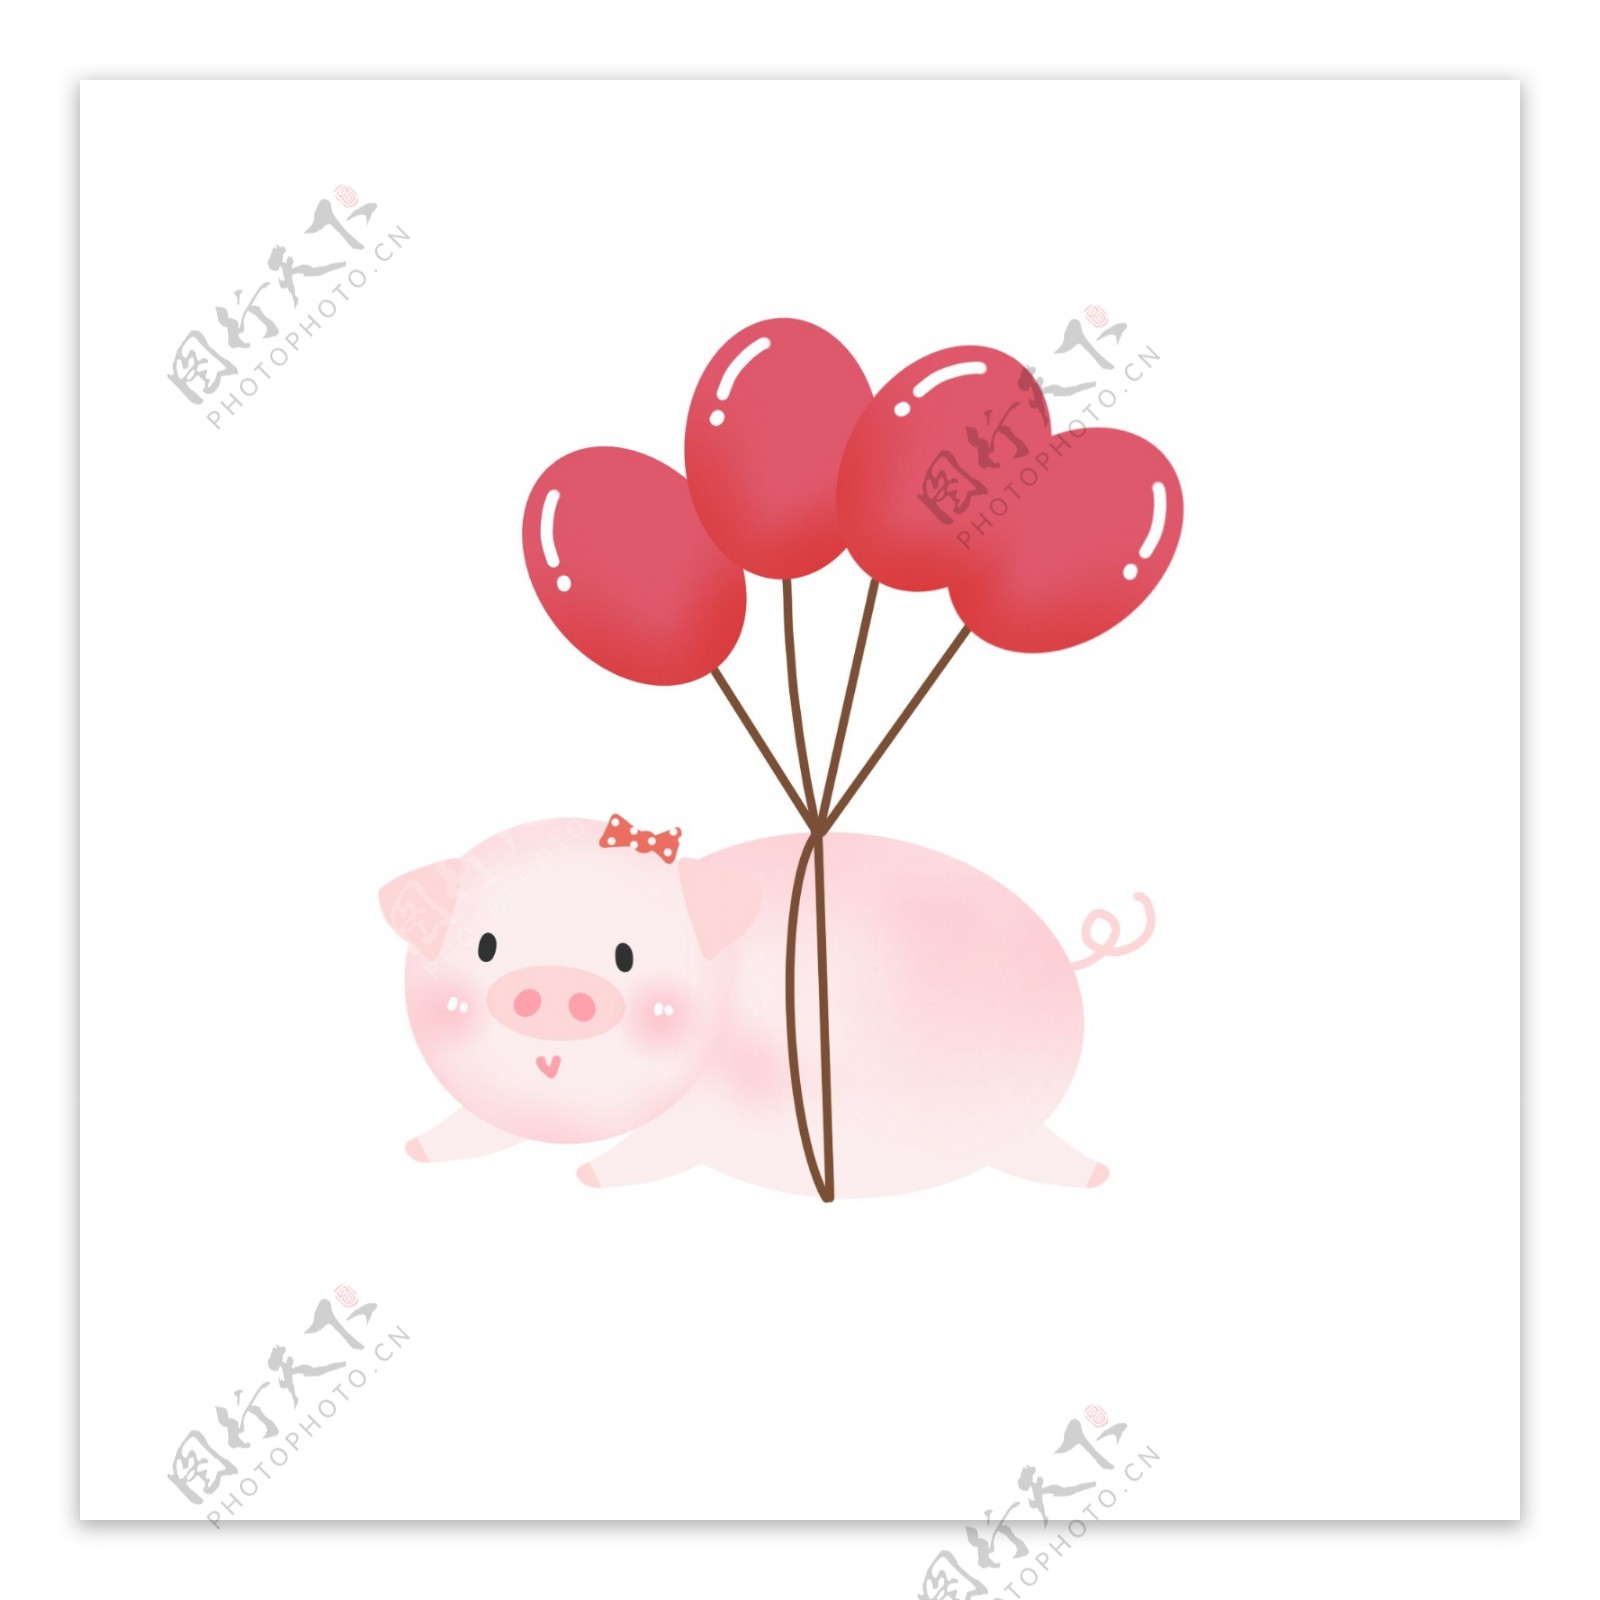 手绘可爱气球猪年猪形象素材元素